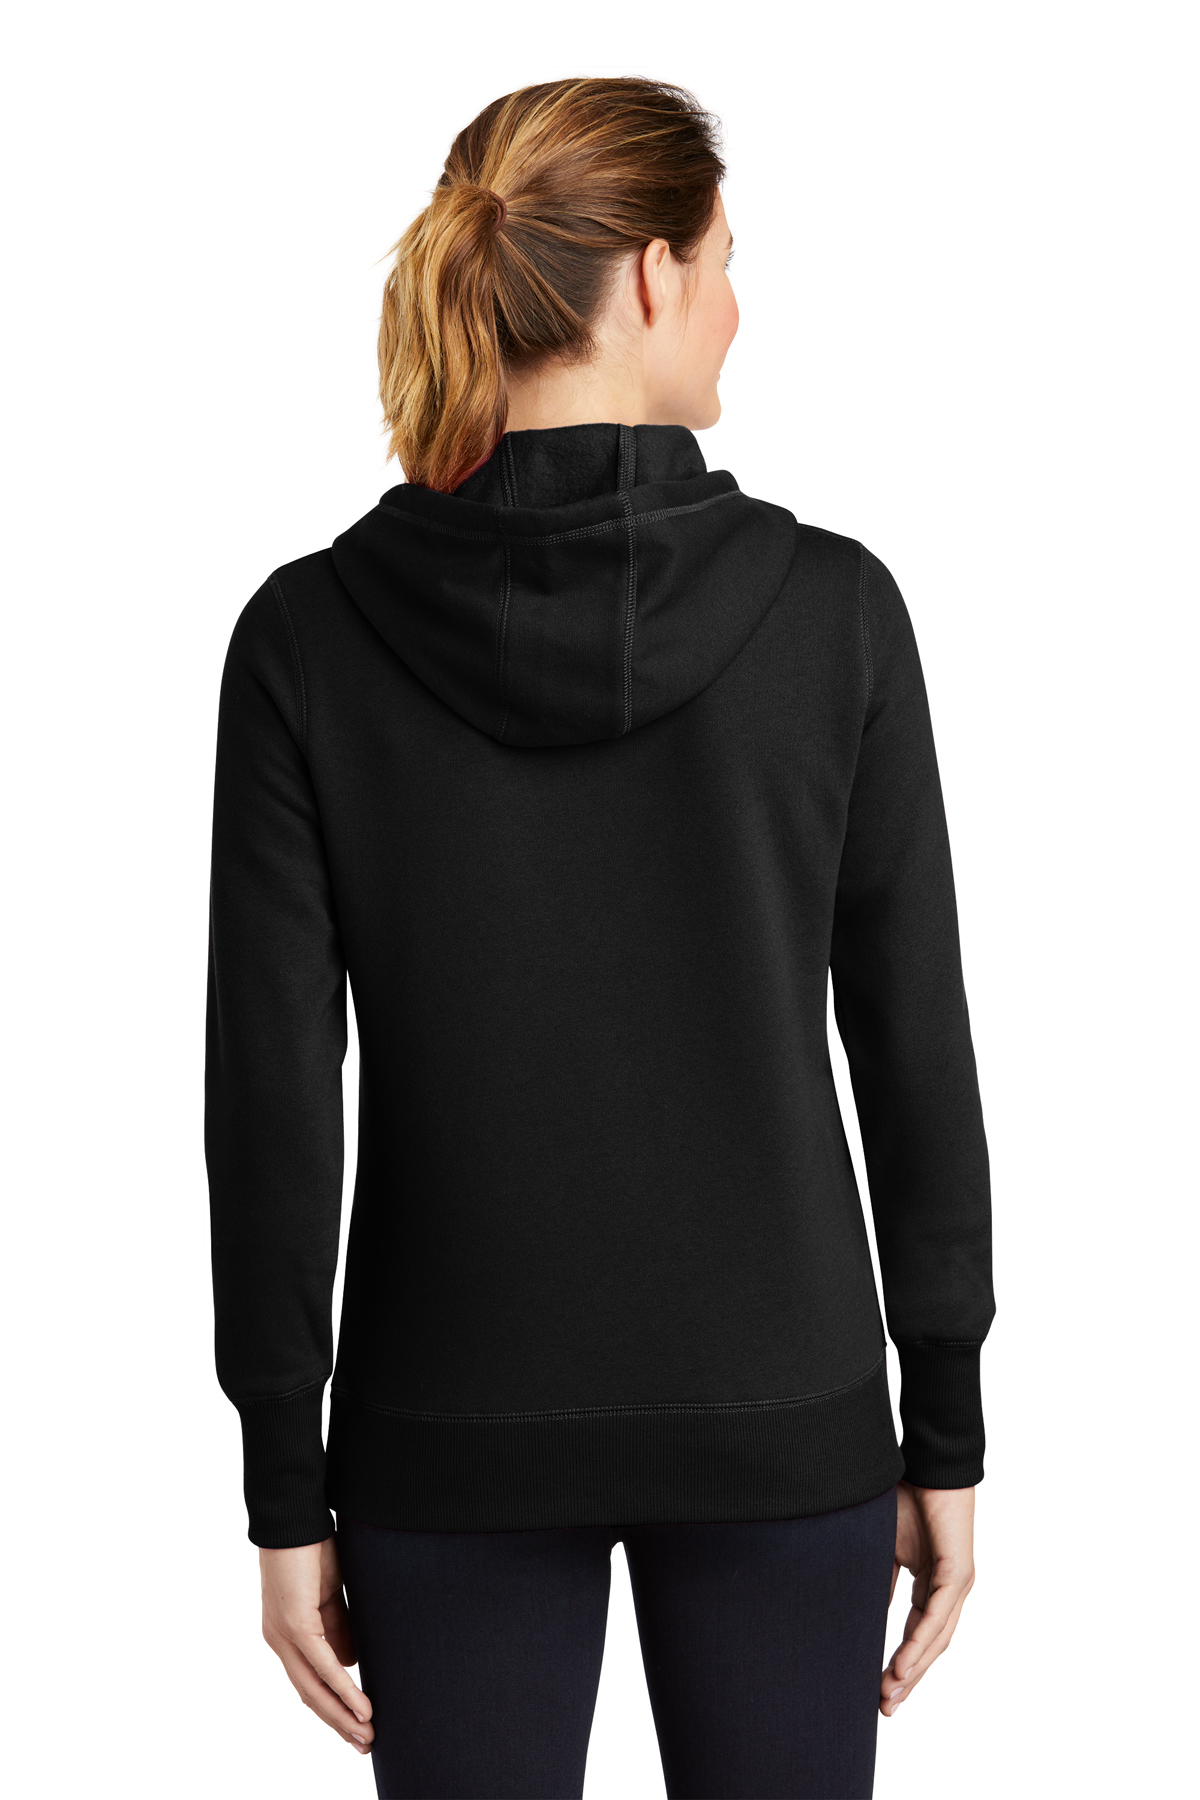 Sport-Tek Ladies Pullover Hooded Sweatshirt | Product | Sport-Tek